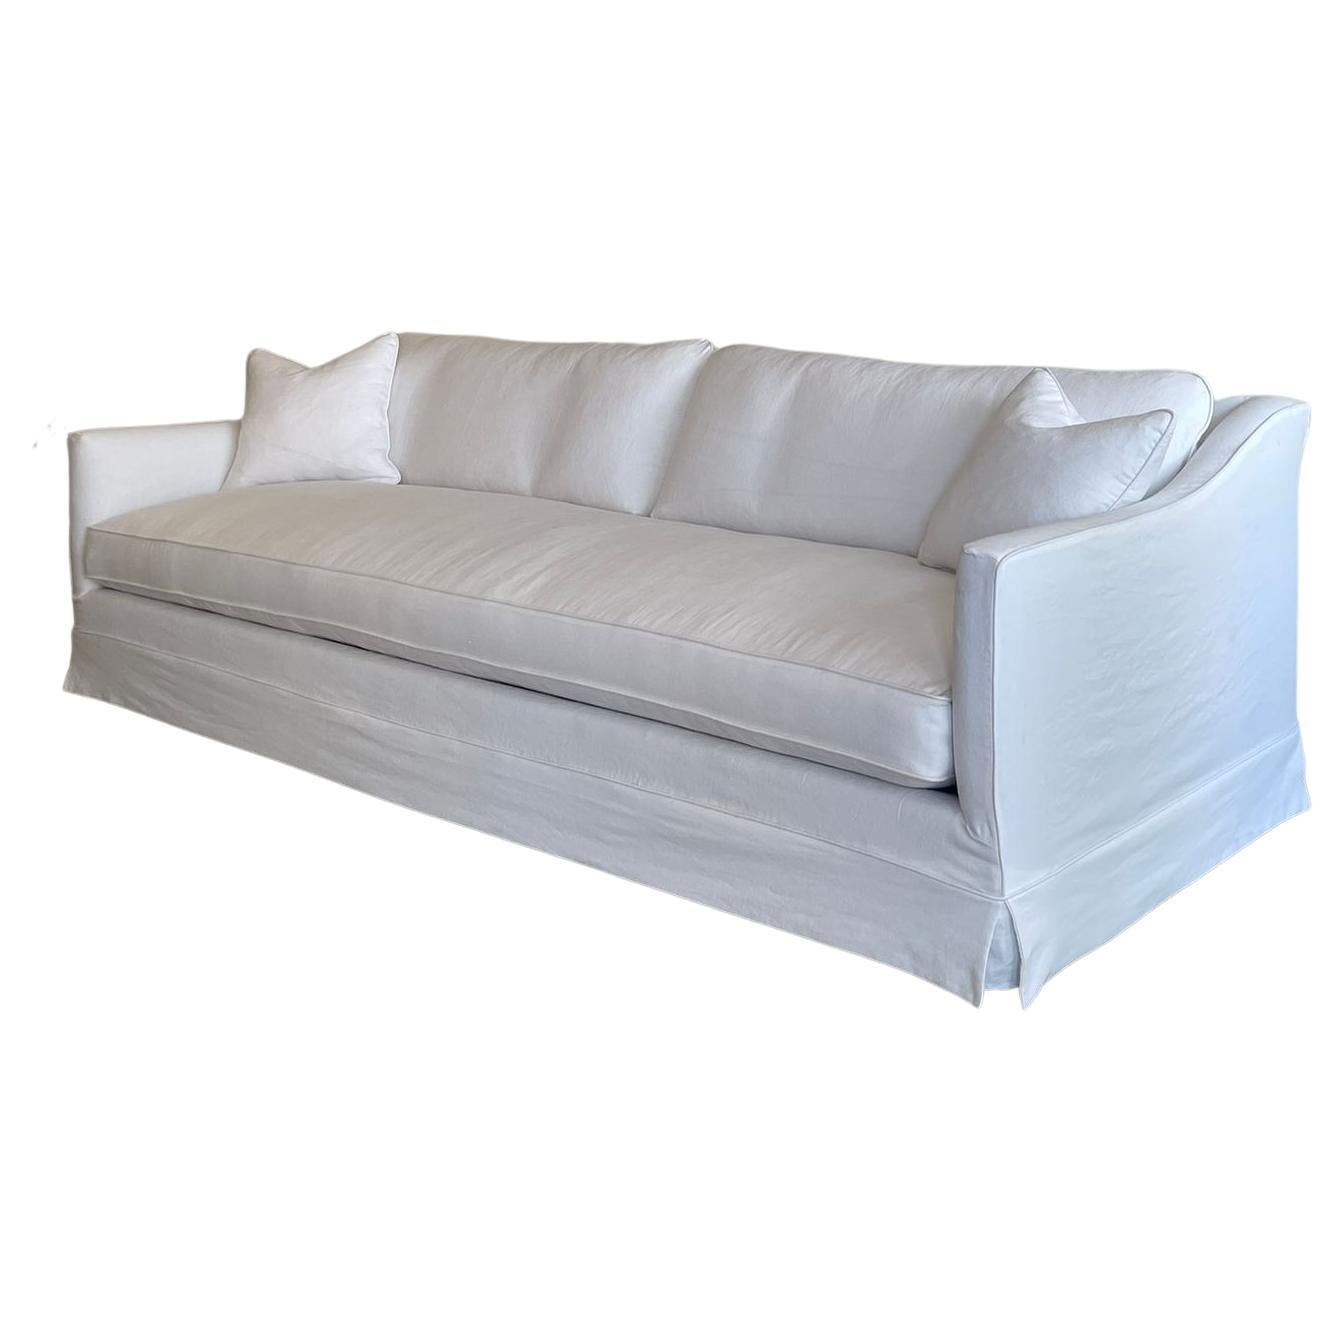 Handgefertigtes Sofa aus belgischem Leinen in Montauk, maßgeschneidert